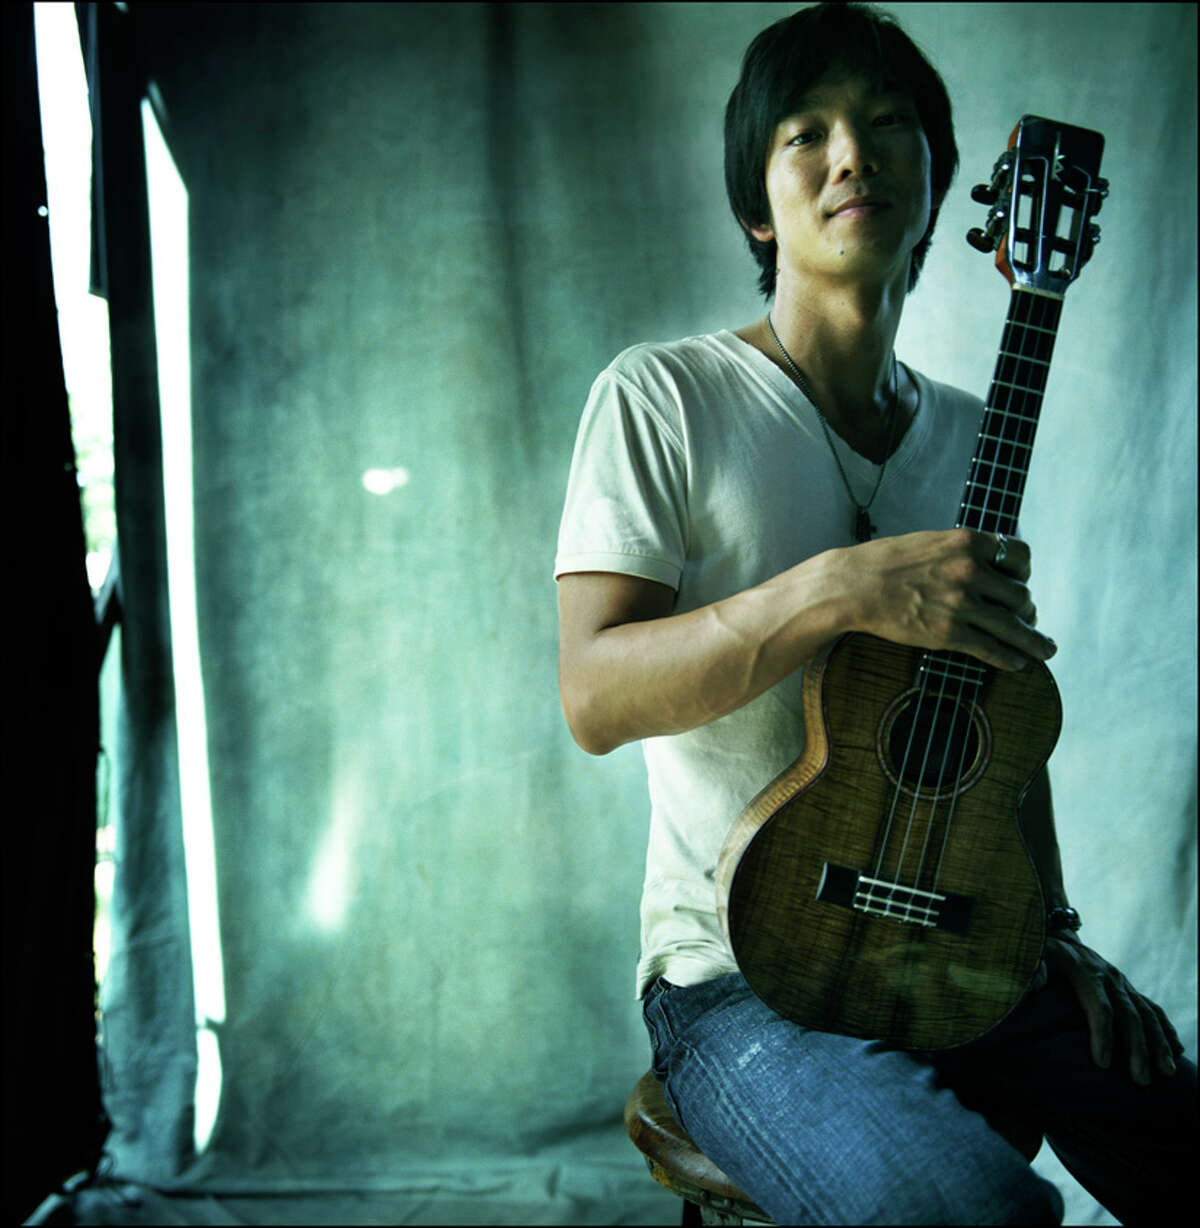 ukulele virtuoso Jake Shimabukuro